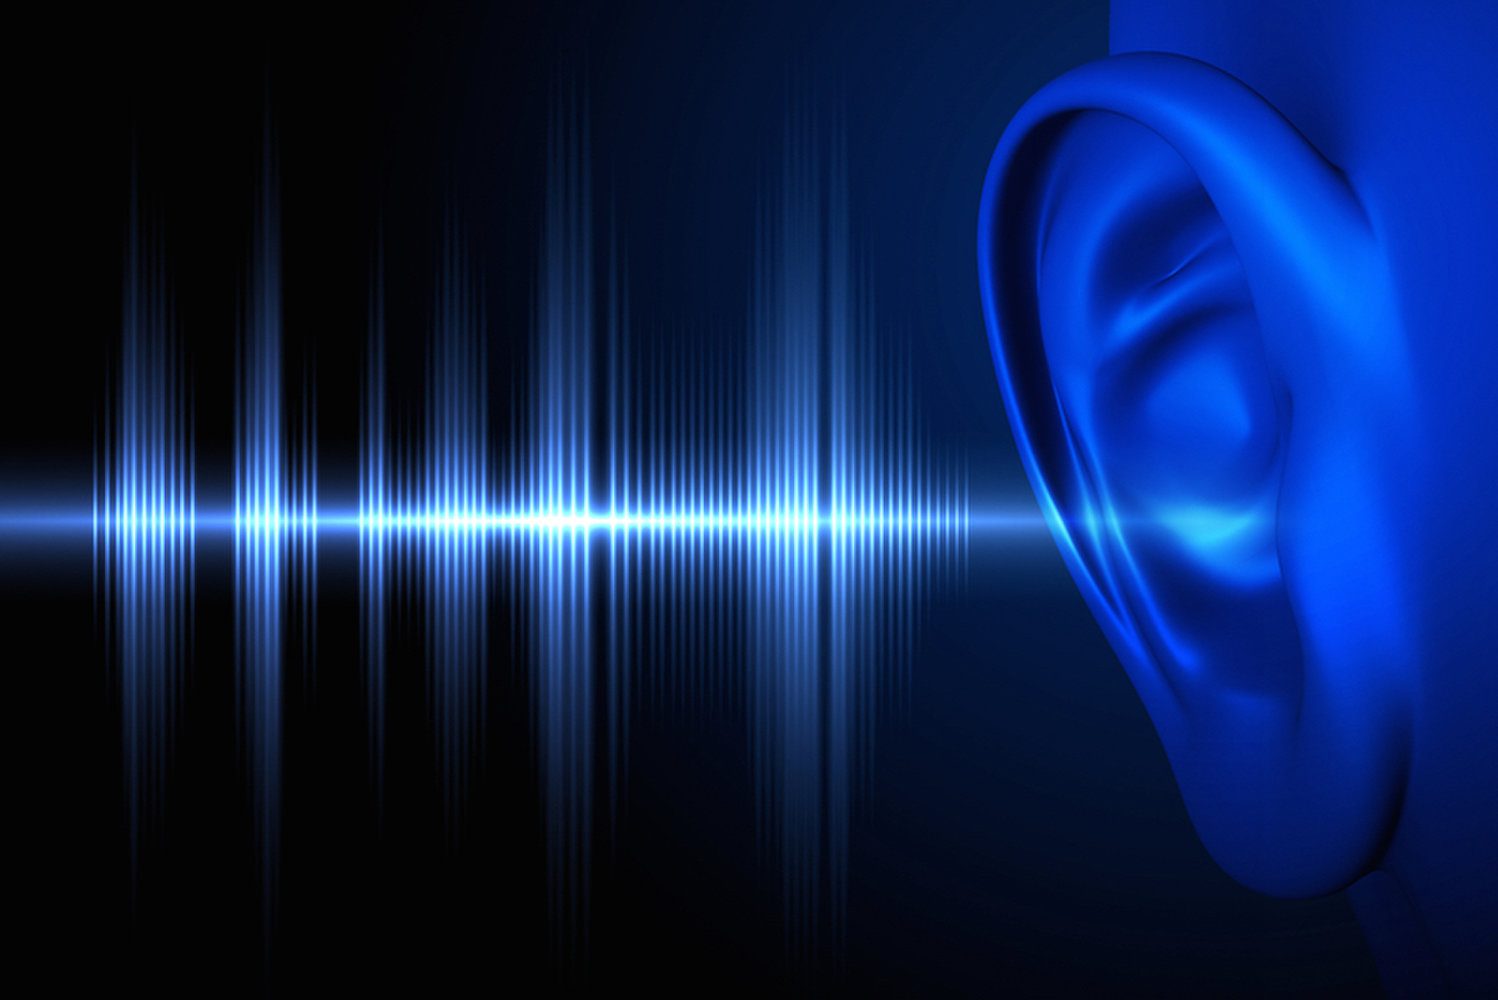 درمان ناشنوایی